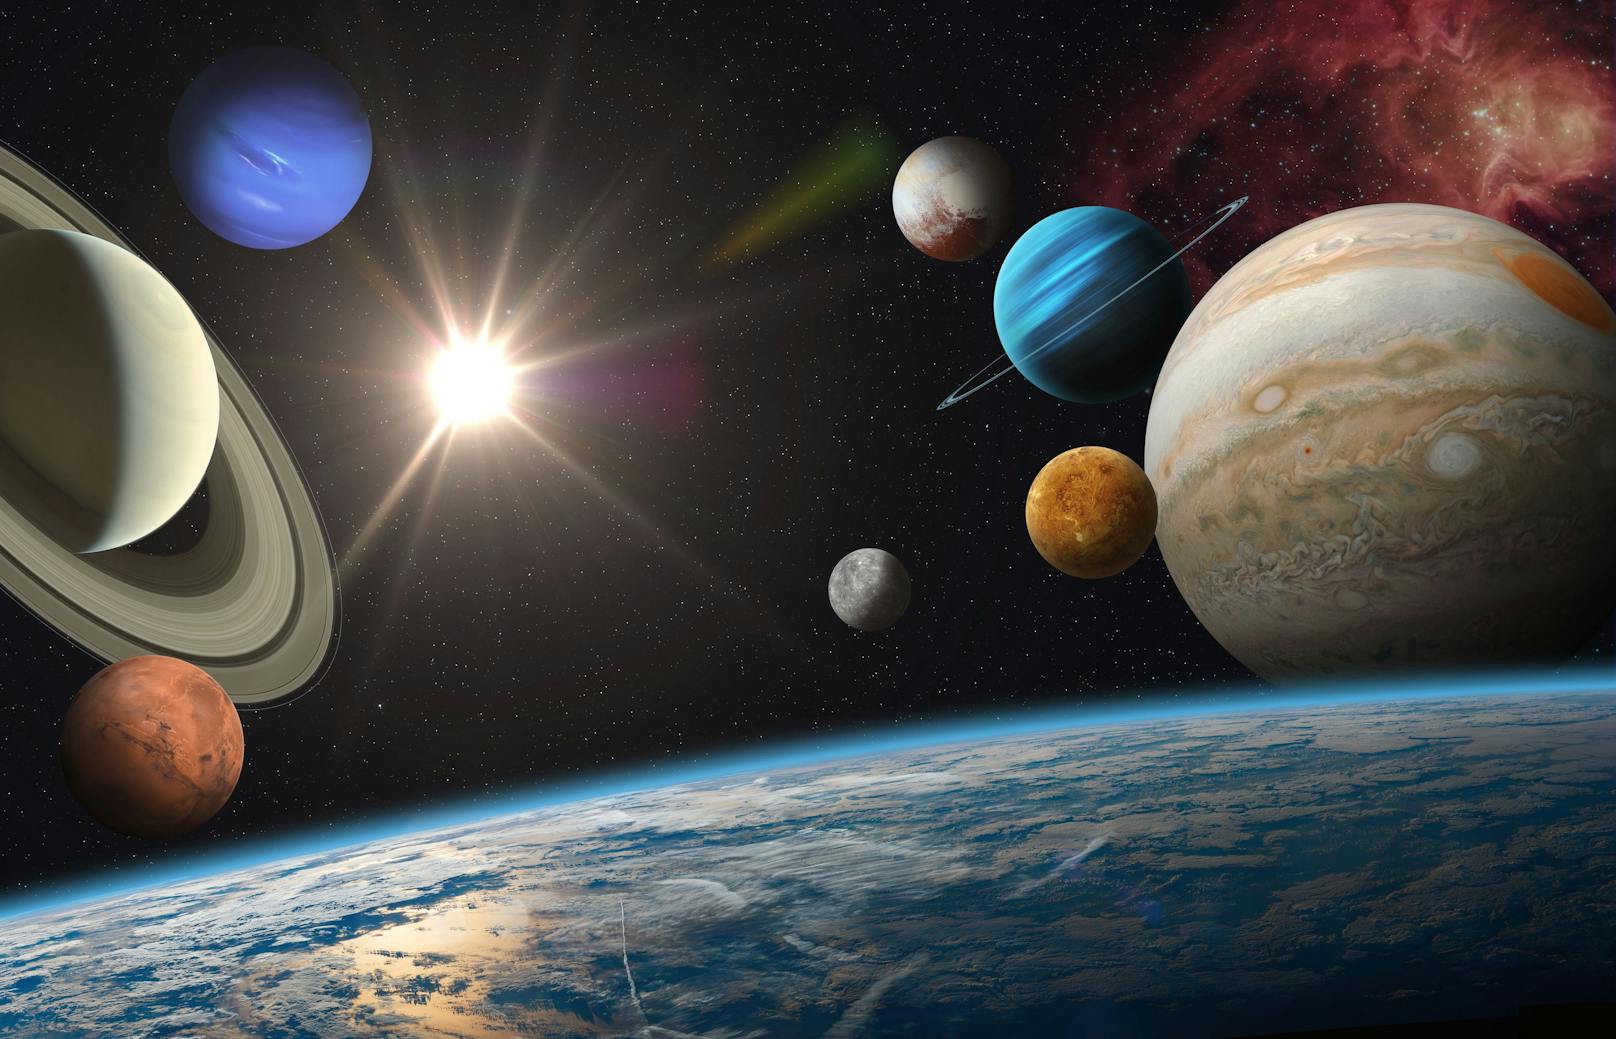 Forscher der Universität in Tulane, USA, fanden heraus, dass der Kalender auf den Bewegungen von mehreren Planeten basierte. Darunter gehörten Mars, Jupiter, Merkur, Saturn und Venus. Die Maya orientierten sich dabei an den Bewegungen der Planeten und beobachteten, wie lange es dauerte, bis die Planeten von der Erde aus wieder an die gleiche Position gelangten.